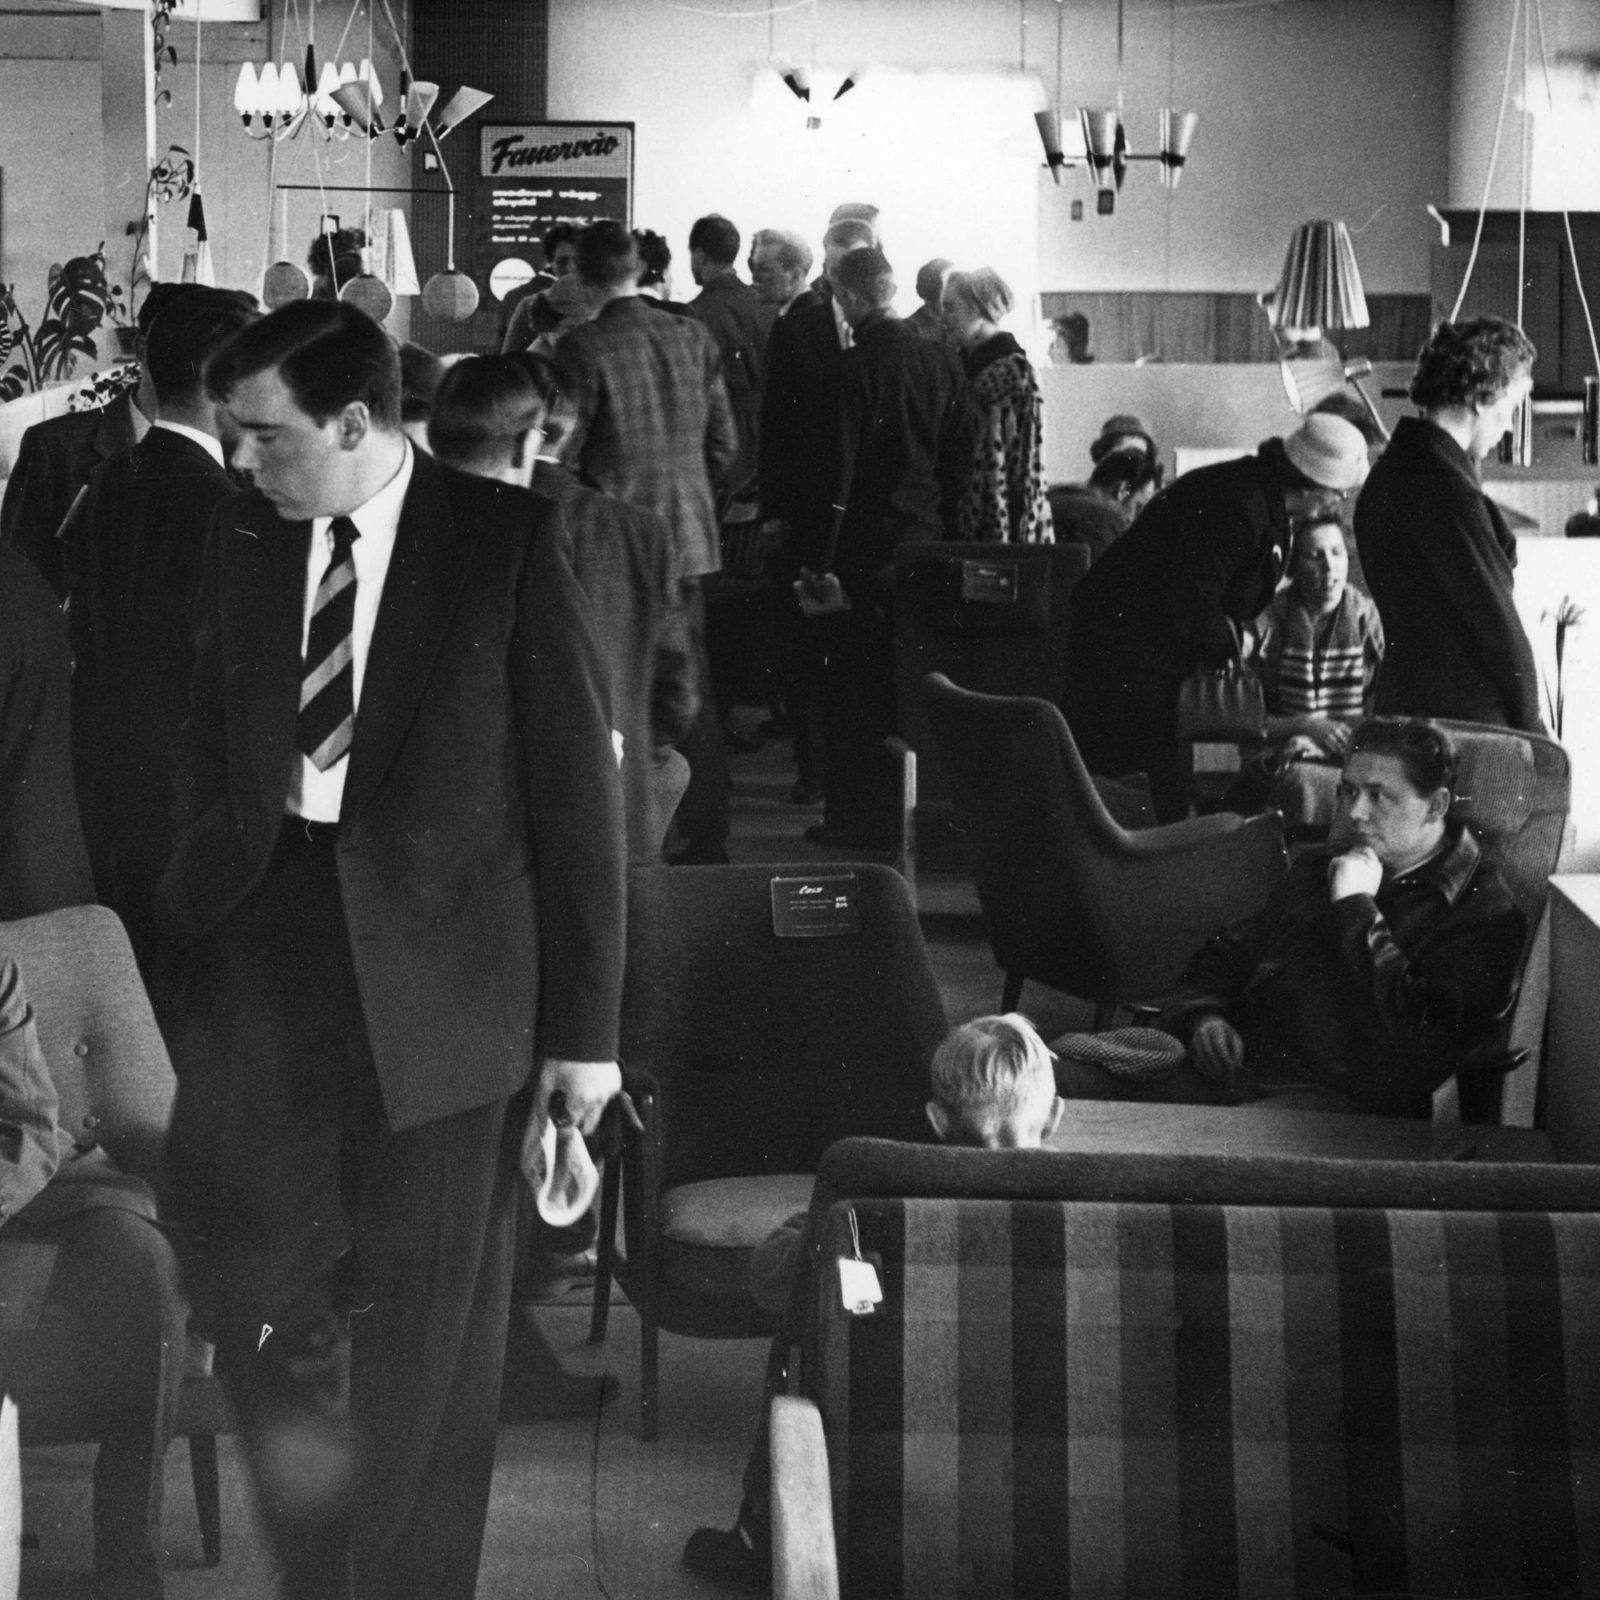 Svartvitt foto av möbelutställning där folk i 1950-talskläder trängs ochtittar på möbler och lampor.